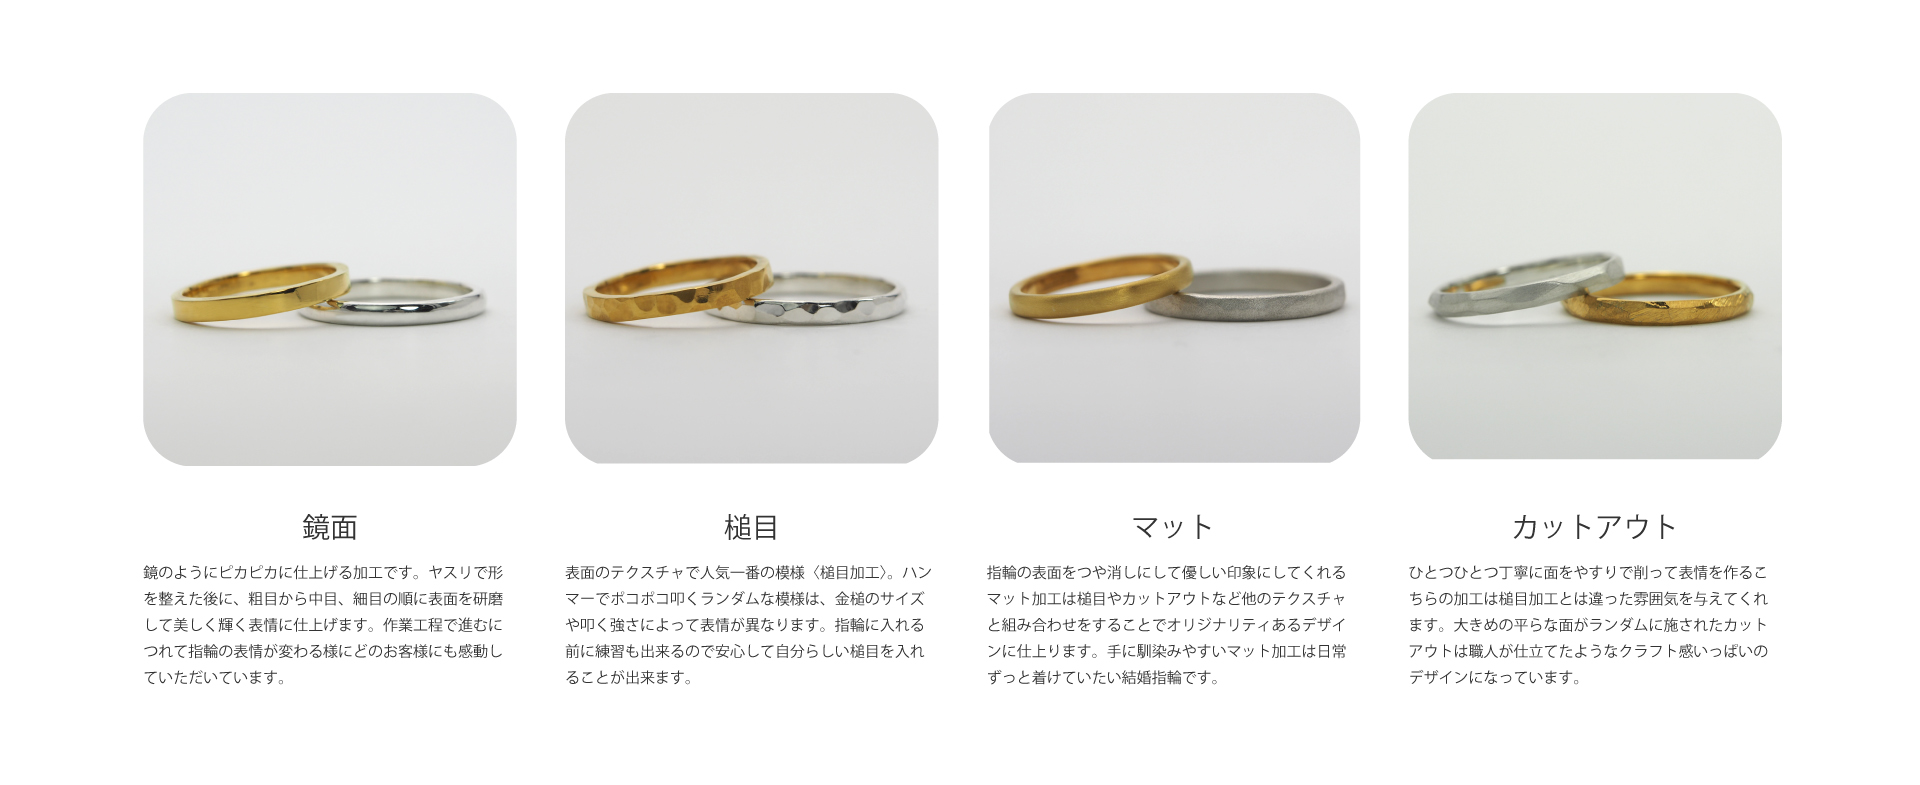 久留米市CHARISᶜᴿ⁸の手作り結婚指輪は様々なテクスチャを組み合わせて世界にひとつの結婚指輪が出来ます